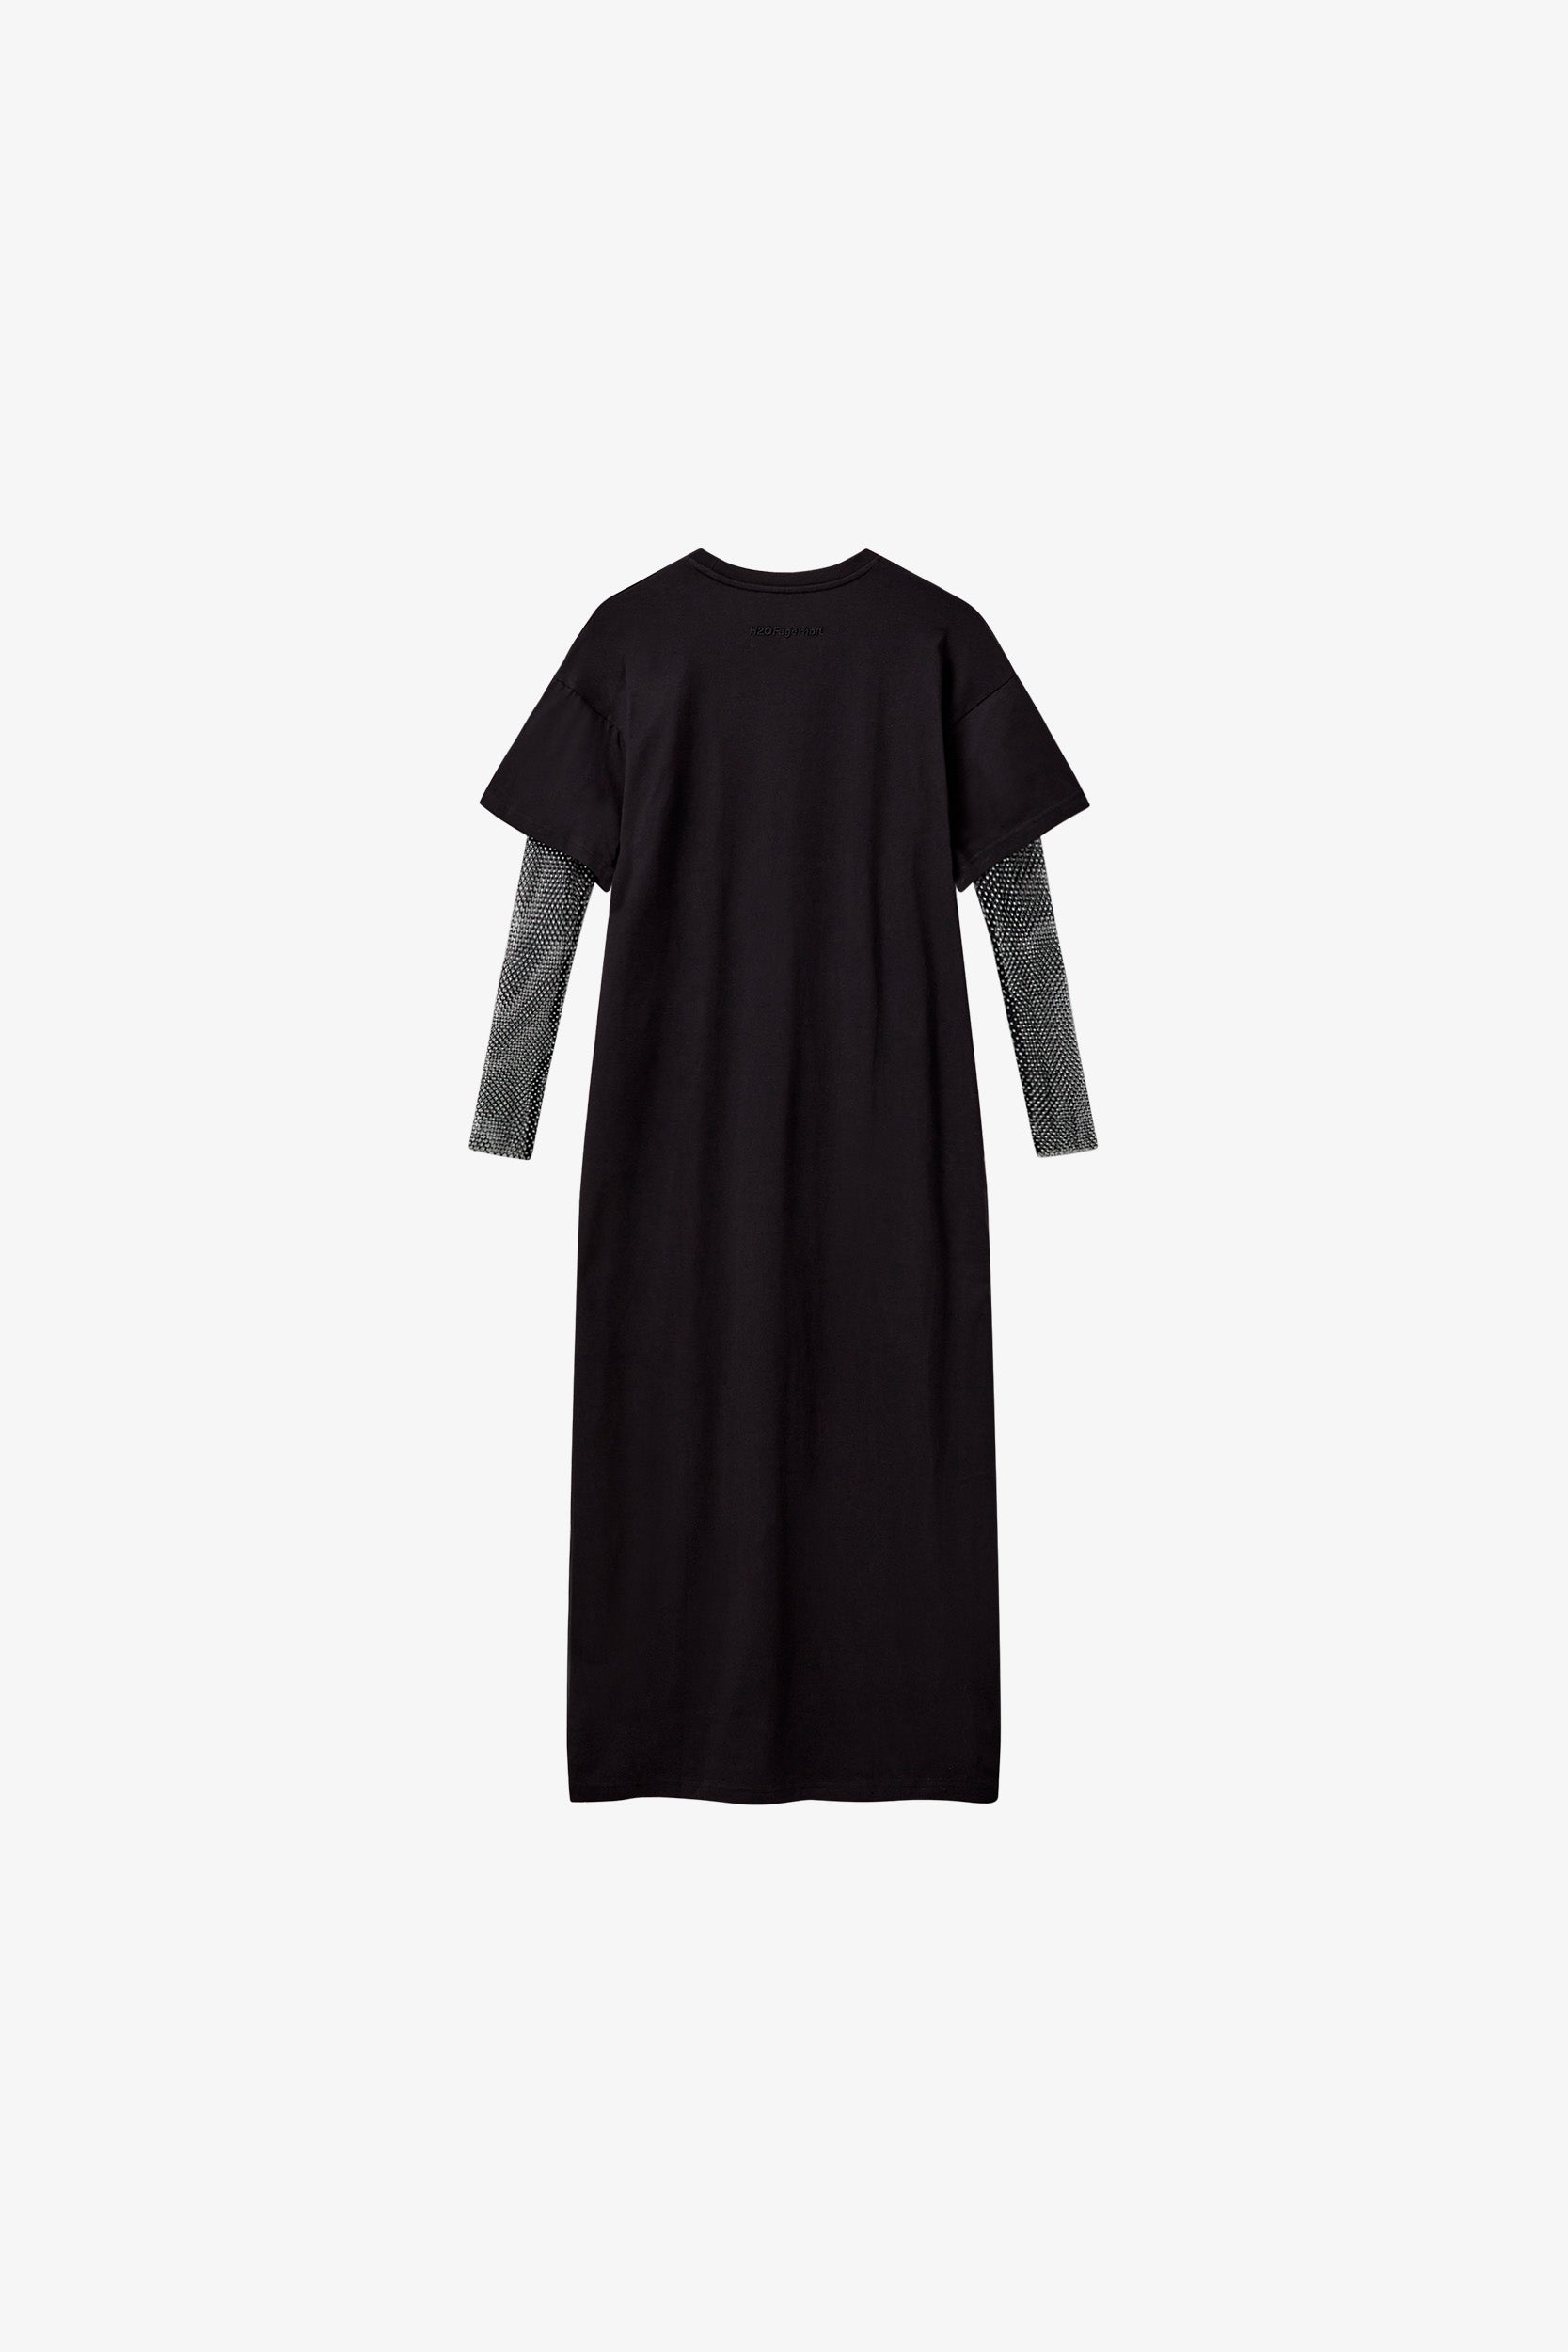 H2OFagerholt Bex T-shirt Dress Dress 3501 Deep Black